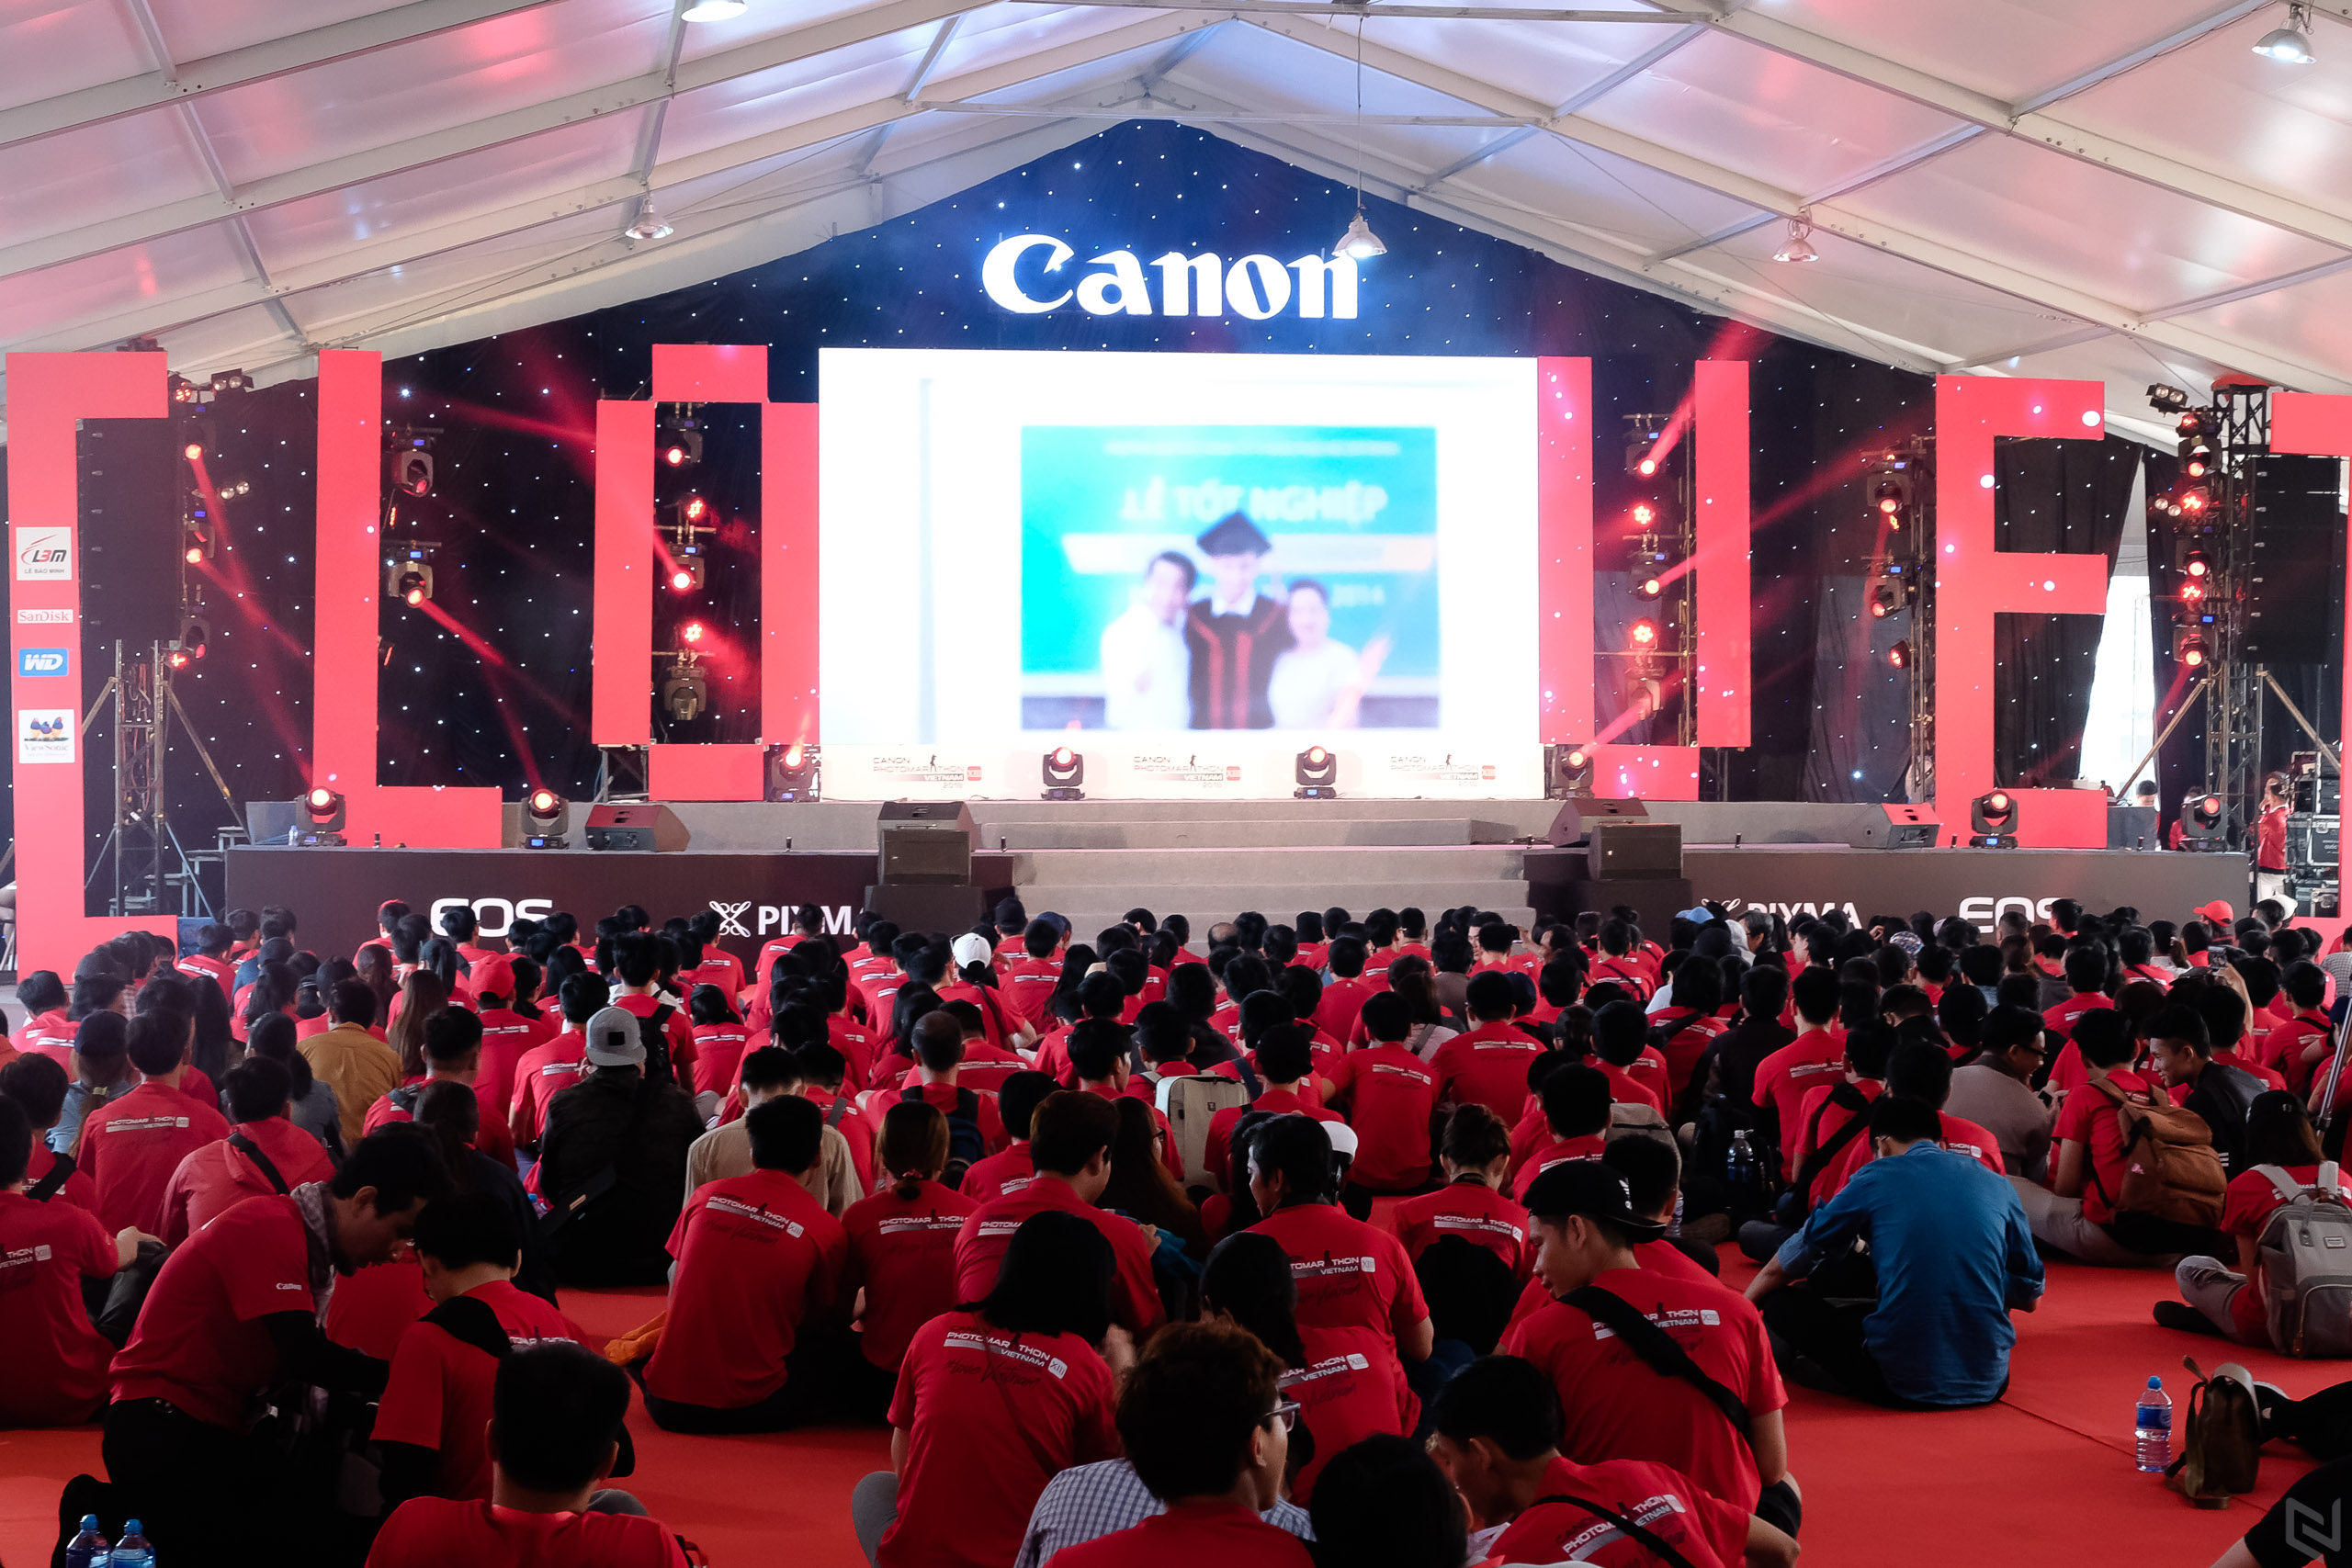 6.700 tay máy trẻ cùng Canon “Sống với điều mình yêu” trong cuộc thi sáng tác ảnh nhanh PhotoMarathon 2018 tại TP. Hồ Chí Minh